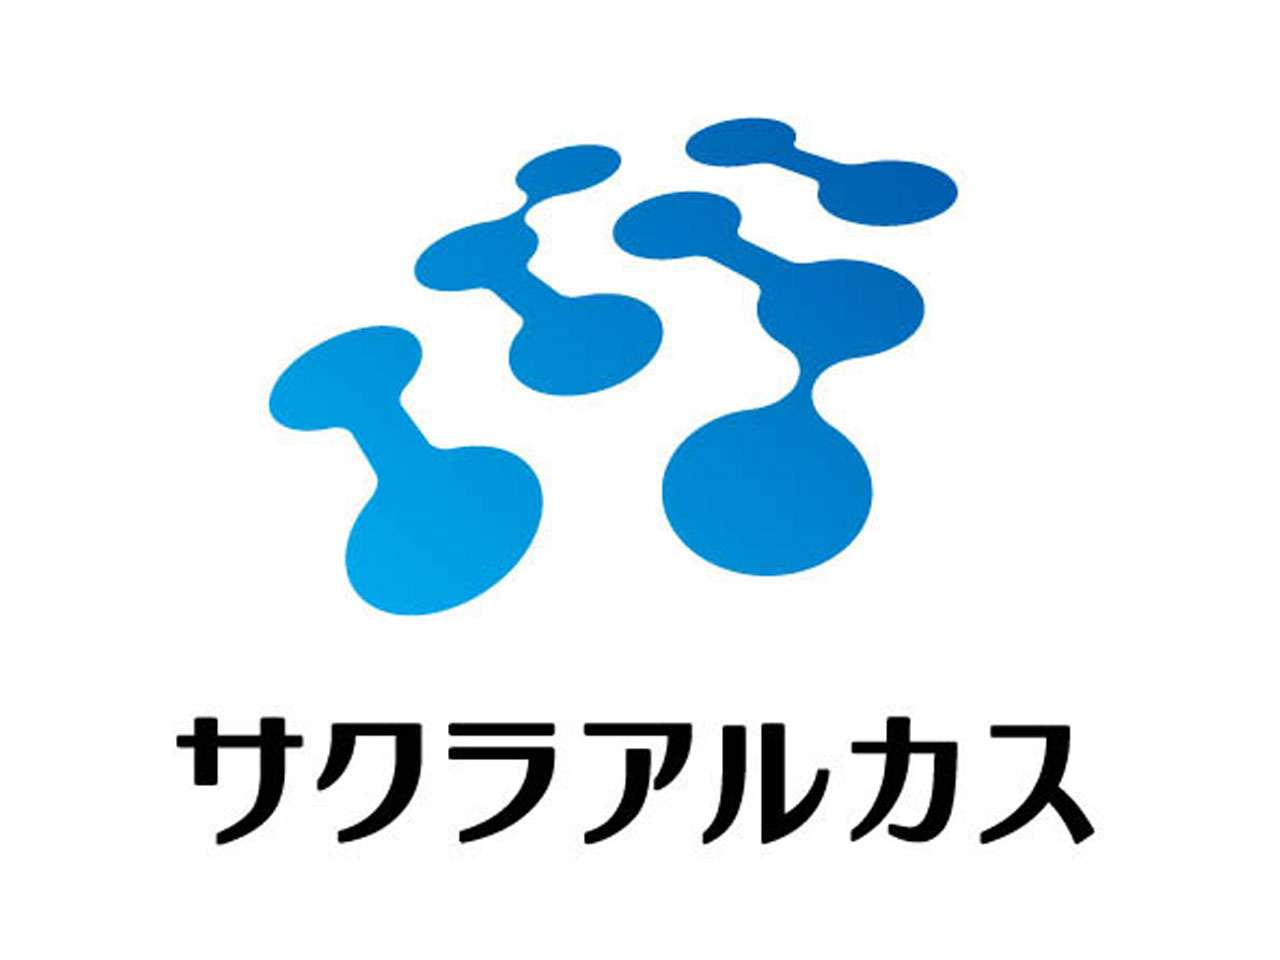 50年の歴史を持つ同社は、名古屋市南区と東京都品川区に拠点を置く。